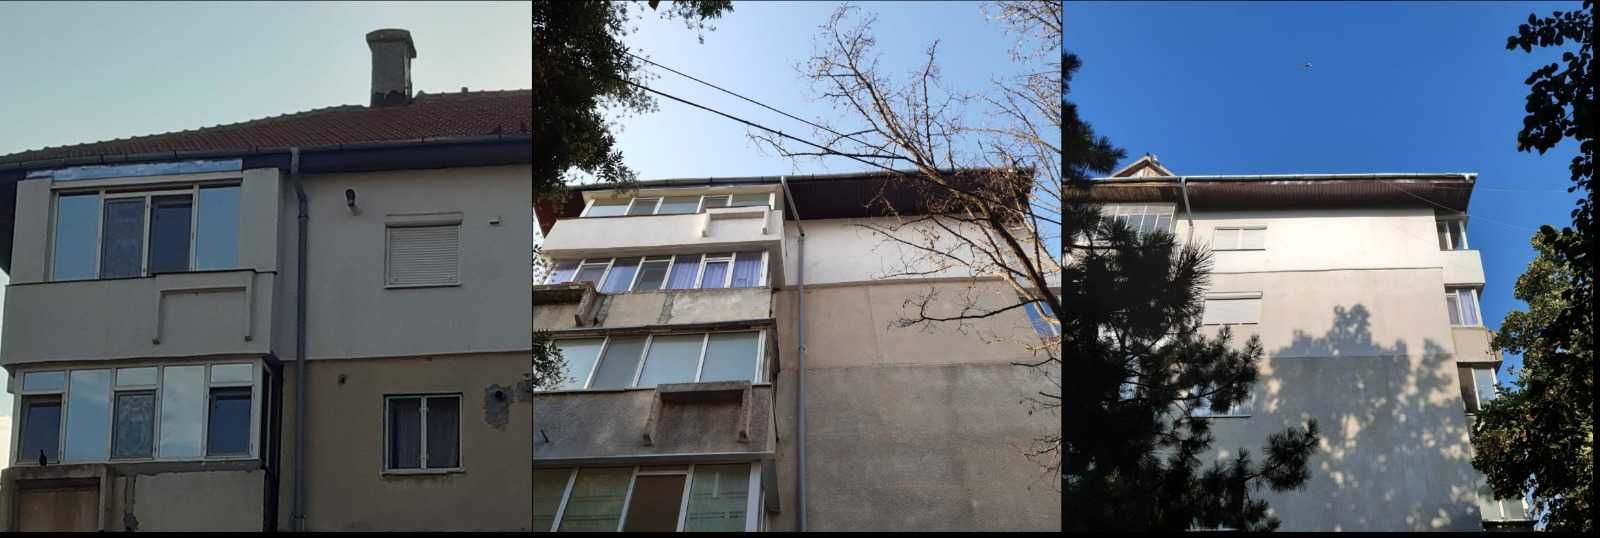 Apartament 3 camere - Județul Ialomița - Slobozia - Zona Cuza Vodă